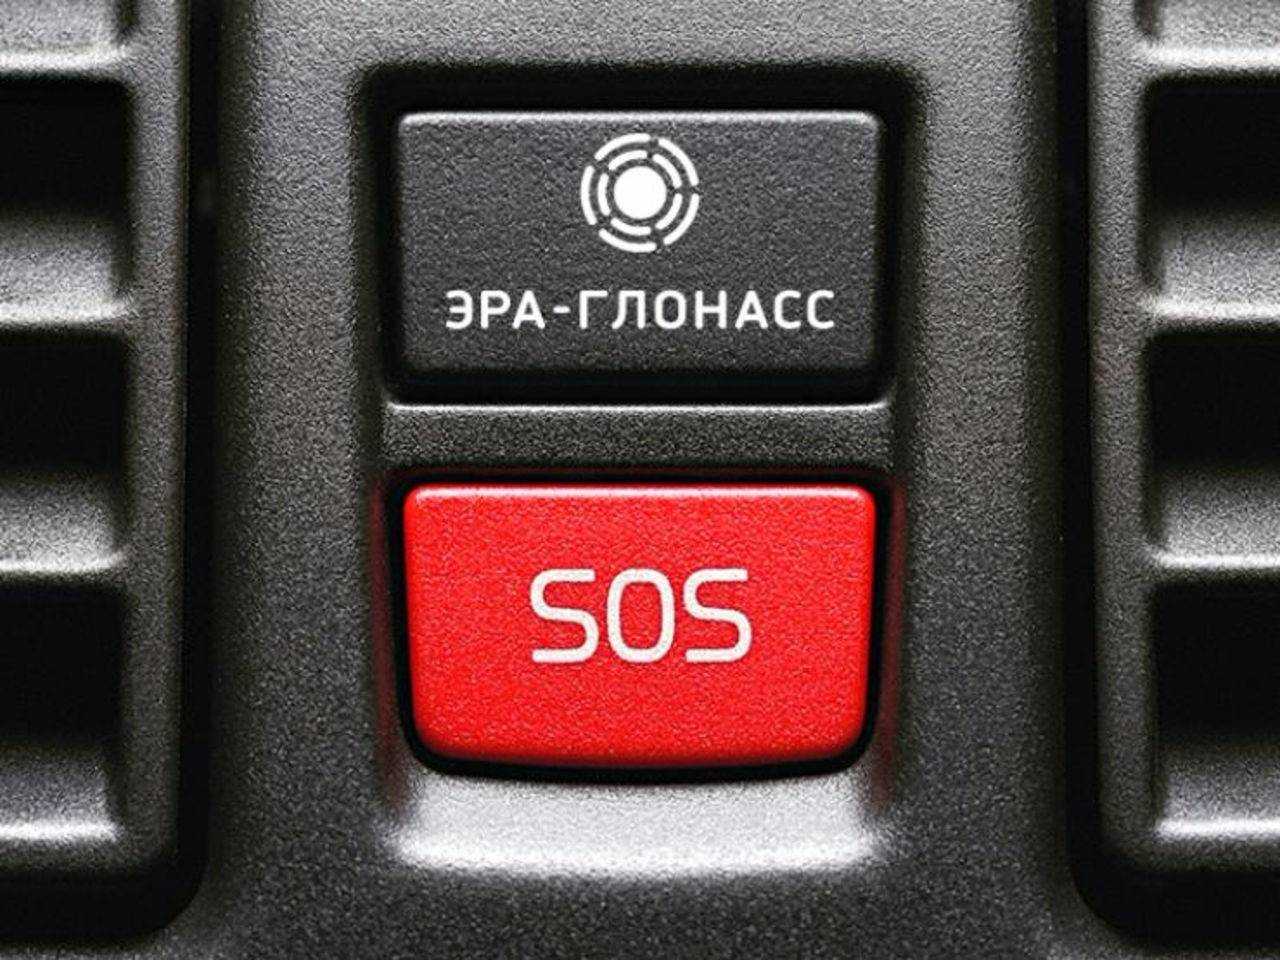 Тревожная кнопка глонасс в автомобиле - что это и как работает, отменили или нет